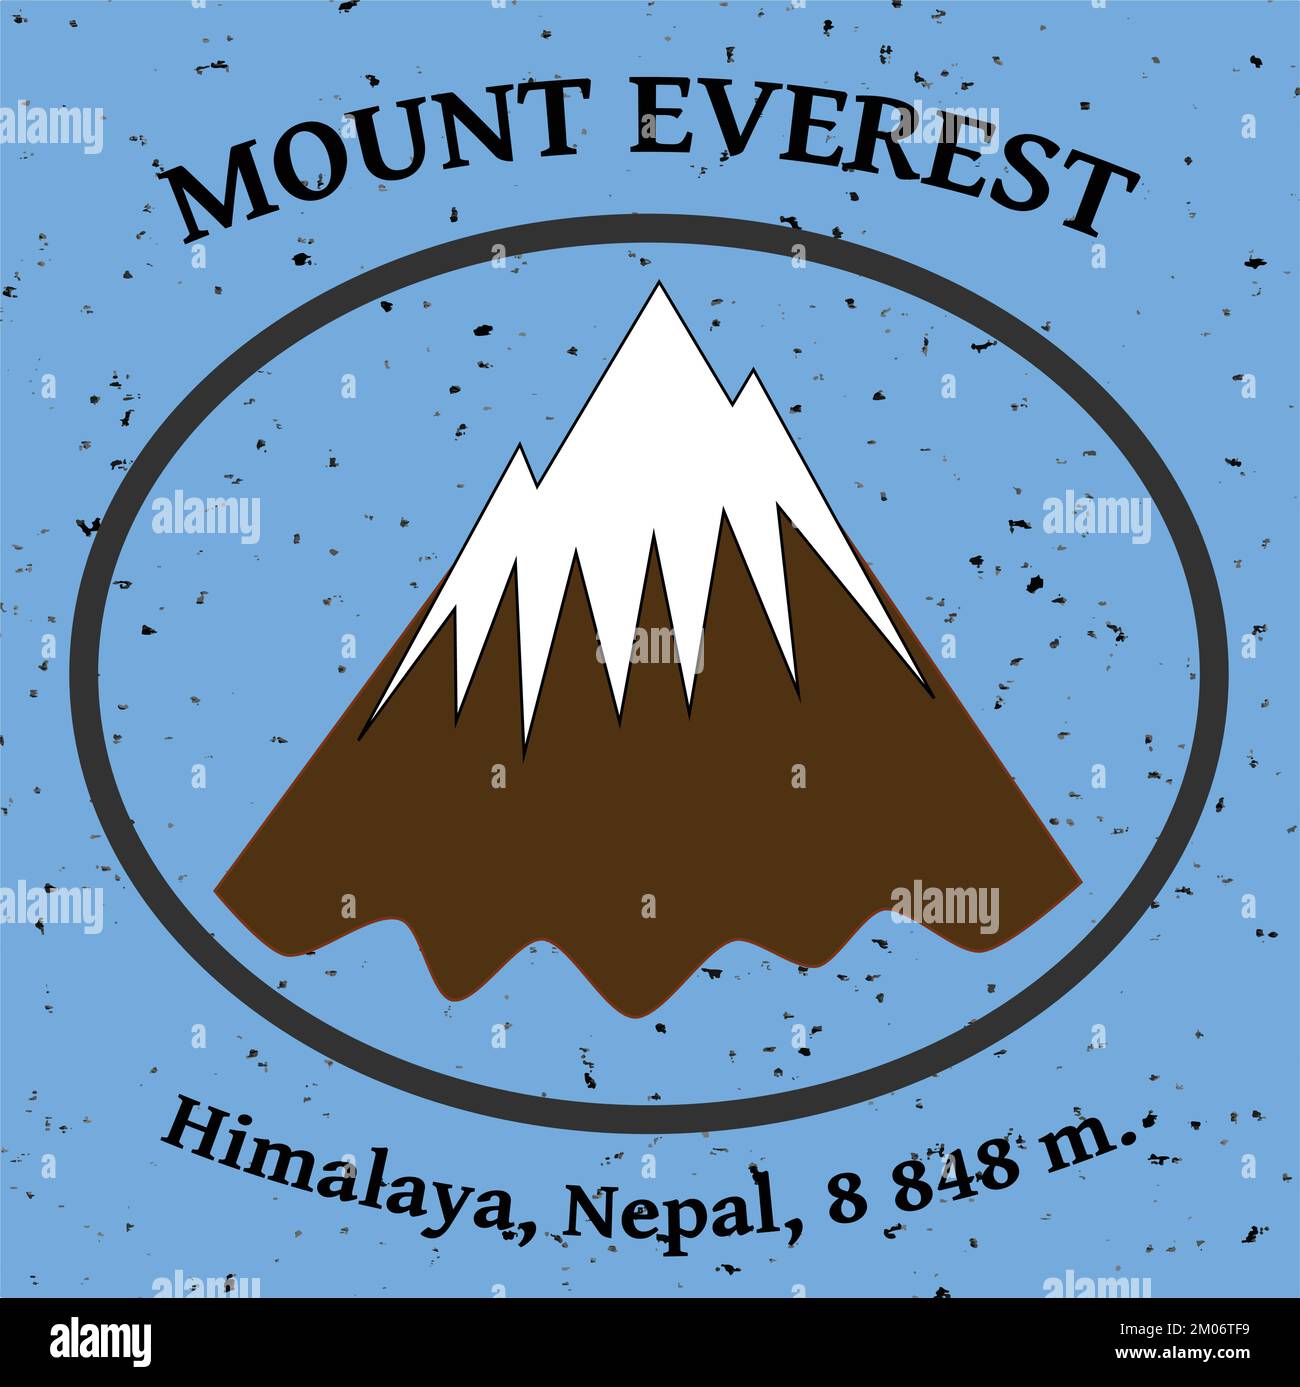 Der Vektor des Berges Ama Dablam veranschaulicht die Landschaft des himalaya-Gebirges Stock Vektor